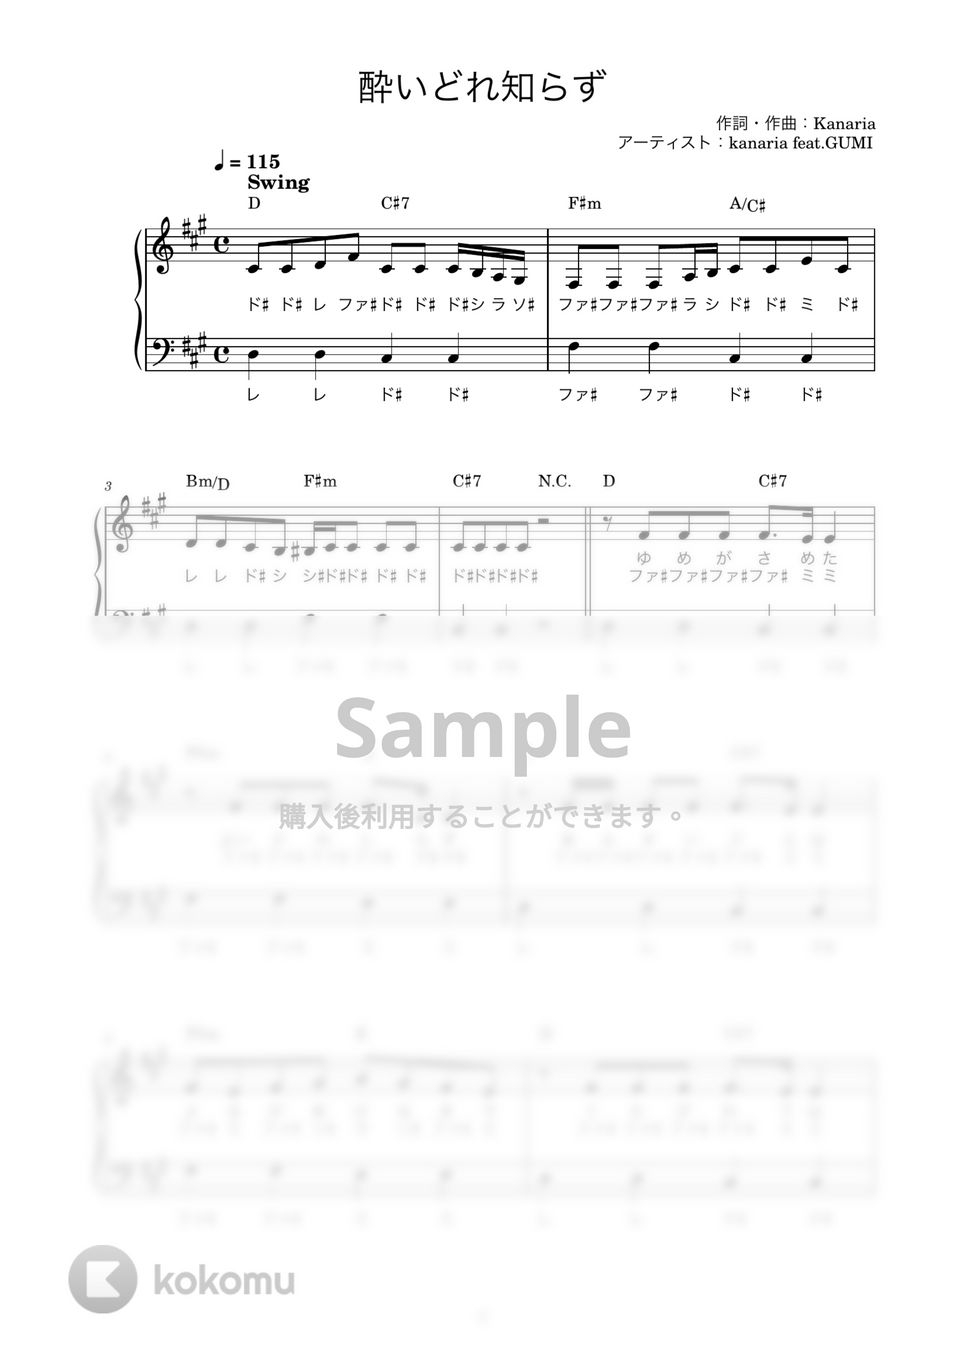 kanaria feat.GUMI - 酔いどれ知らず (かんたん / 歌詞付き / ドレミ付き / 初心者) by piano.tokyo